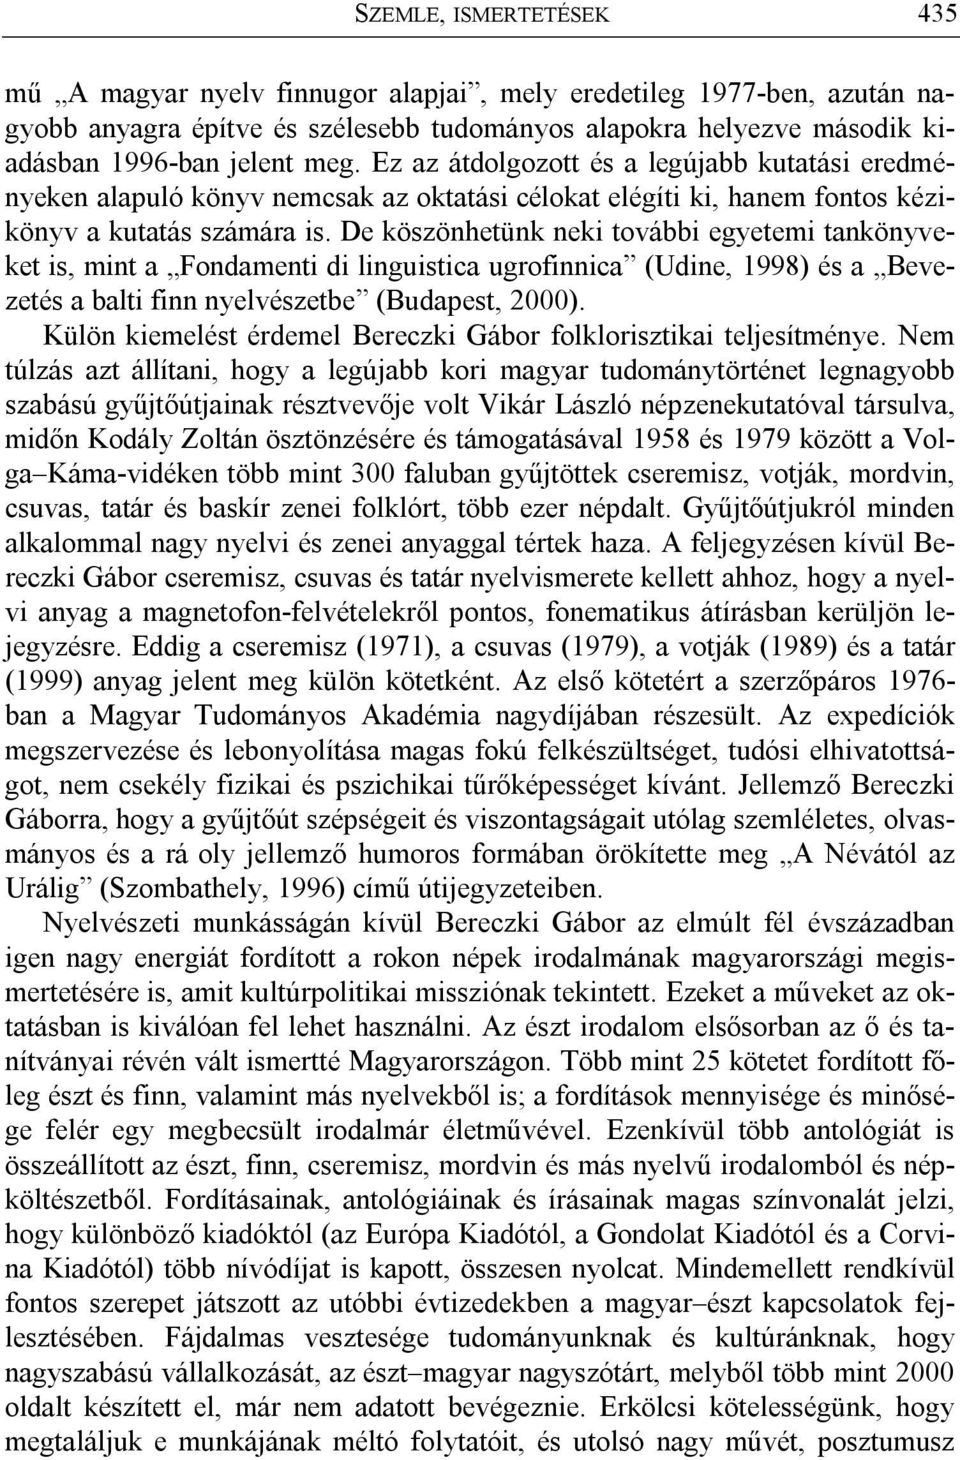 De köszönhetünk neki további egyetemi tankönyveket is, mint a Fondamenti di linguistica ugrofinnica (Udine, 1998) és a Bevezetés a balti finn nyelvészetbe (Budapest, 2000).